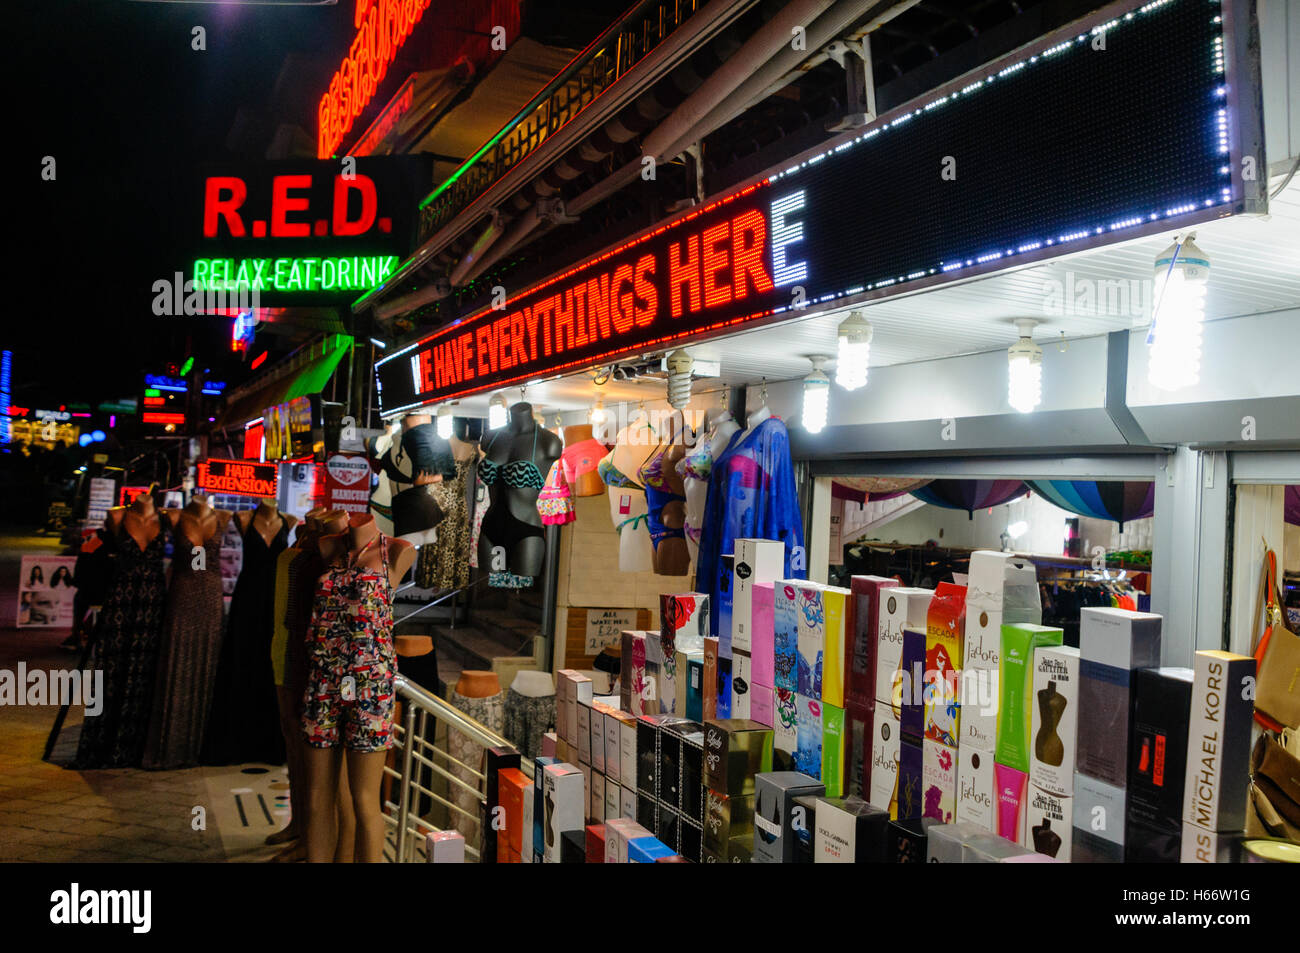 Shop in der Türkei verkaufen gefälschte Designer Kleidung und Parfüm  Stockfotografie - Alamy